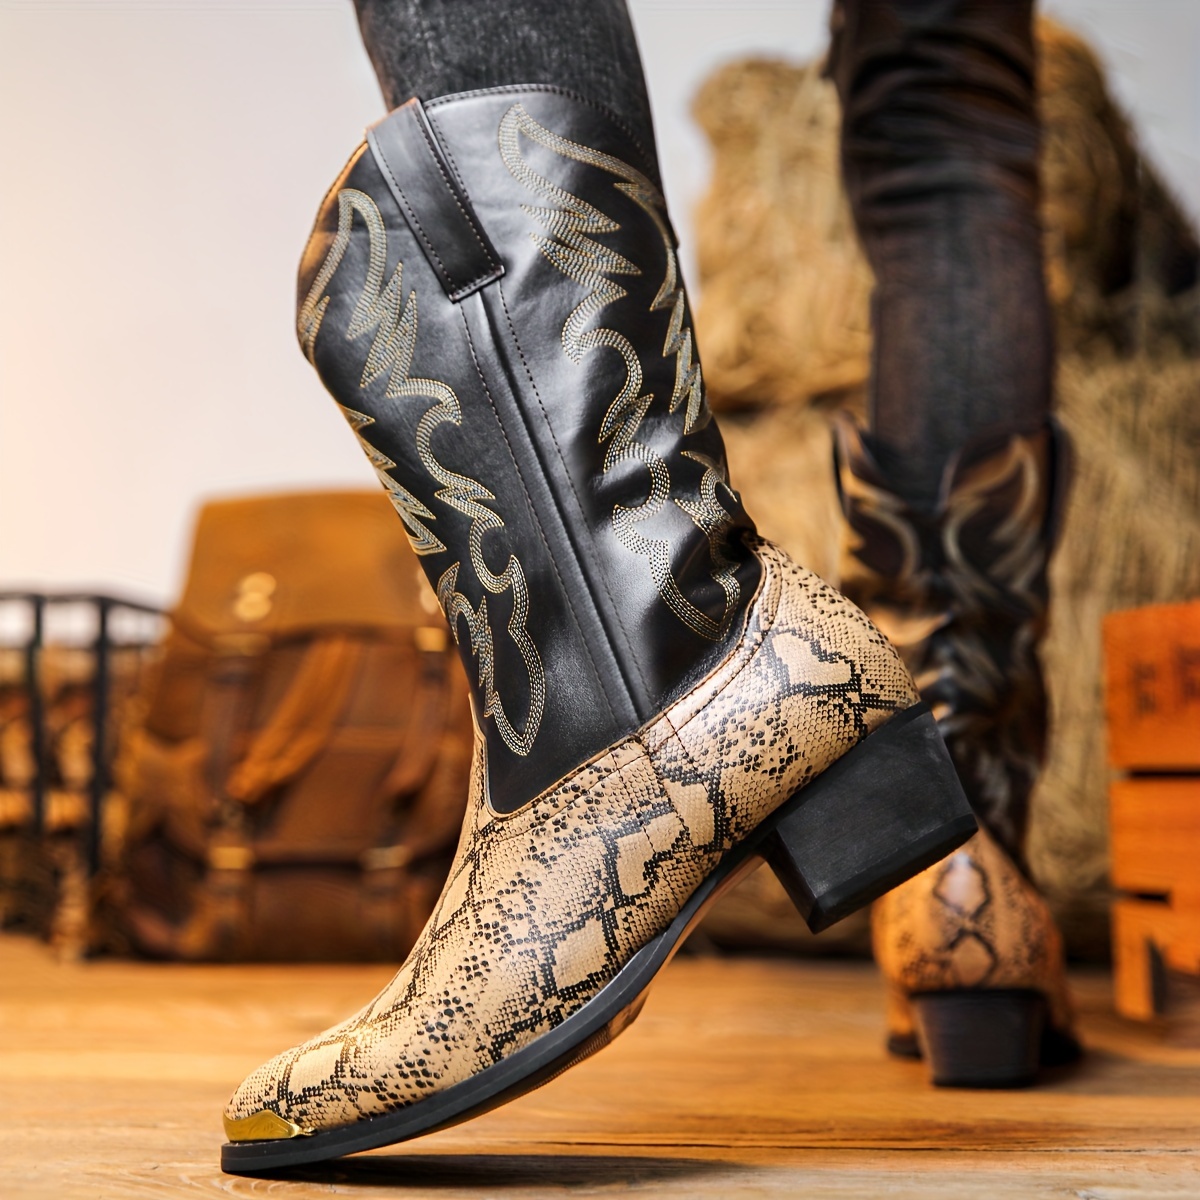 Botas de vaquero vintage para hombres, zapatos de alta calidad  antideslizantes para montar a caballo al aire libre